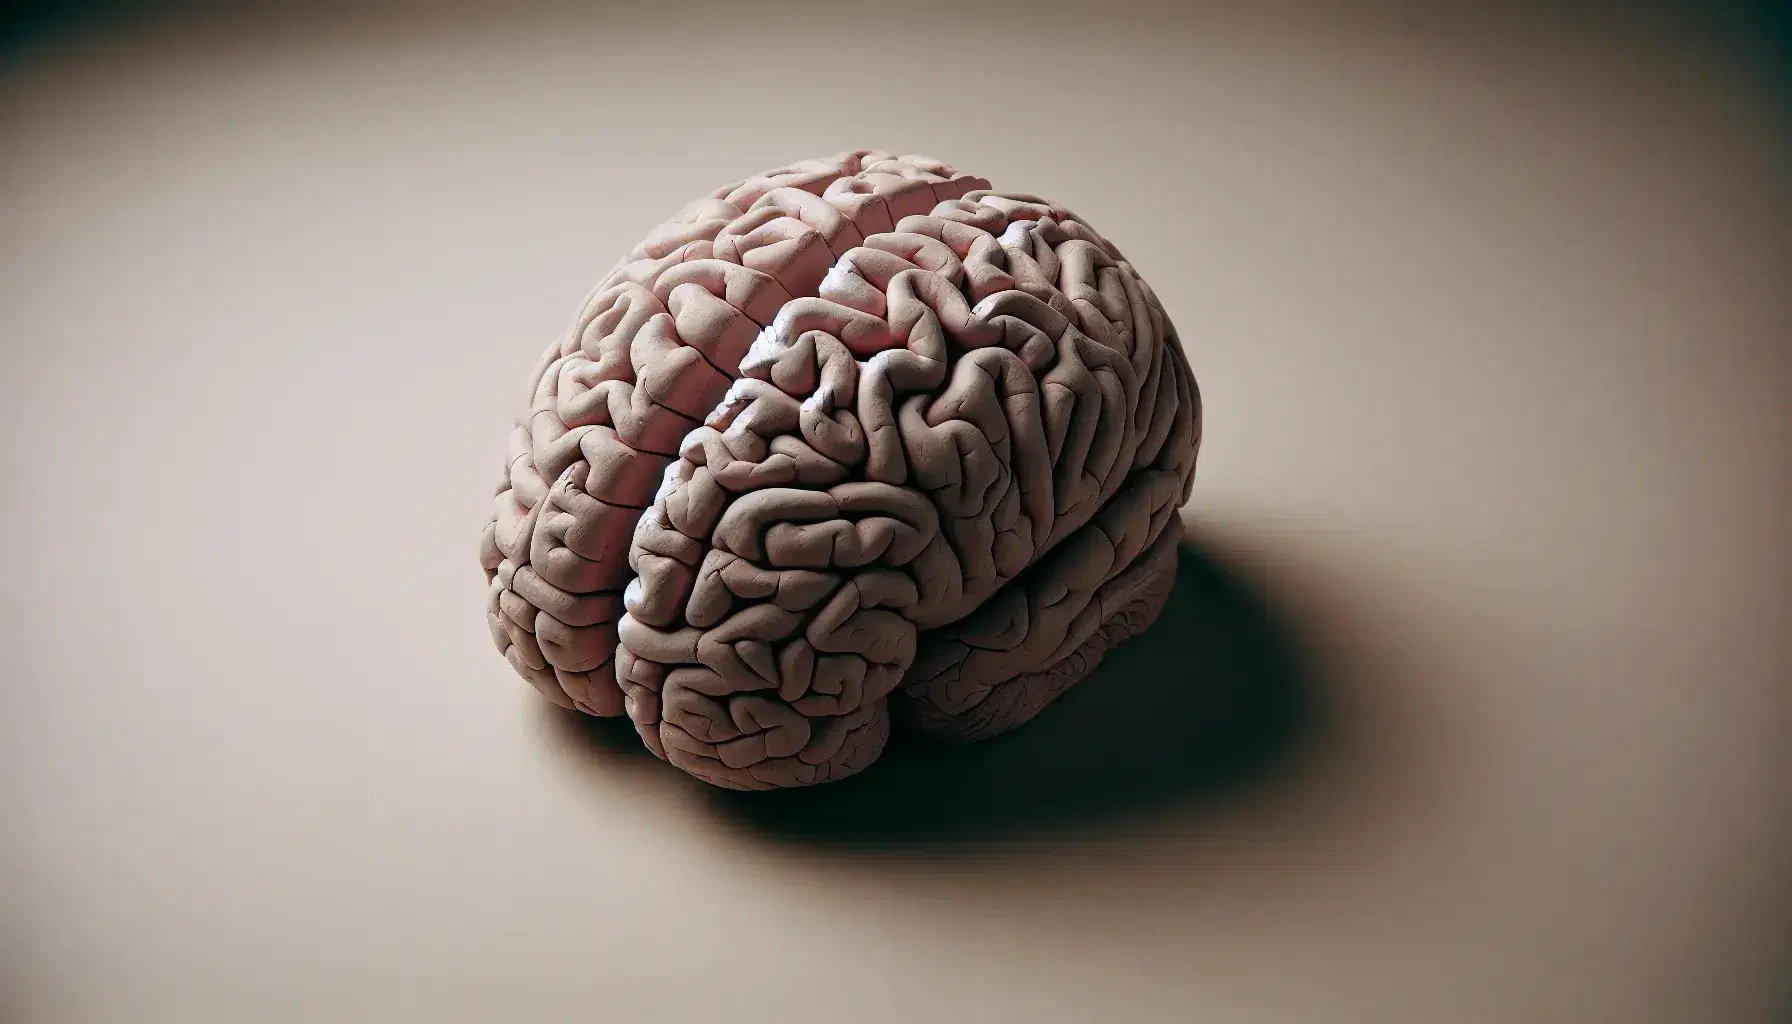 Modello anatomico dettagliato di cervello umano in argilla su sfondo neutro, evidenziando la complessa struttura cerebrale.